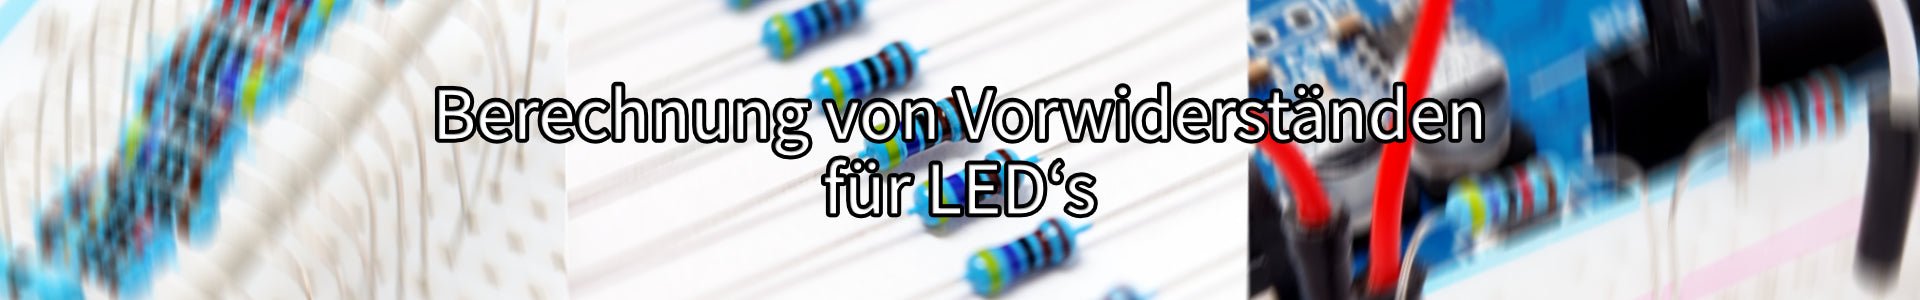 Berechnung von Vorwiderständen für LEDs - AZ-Delivery